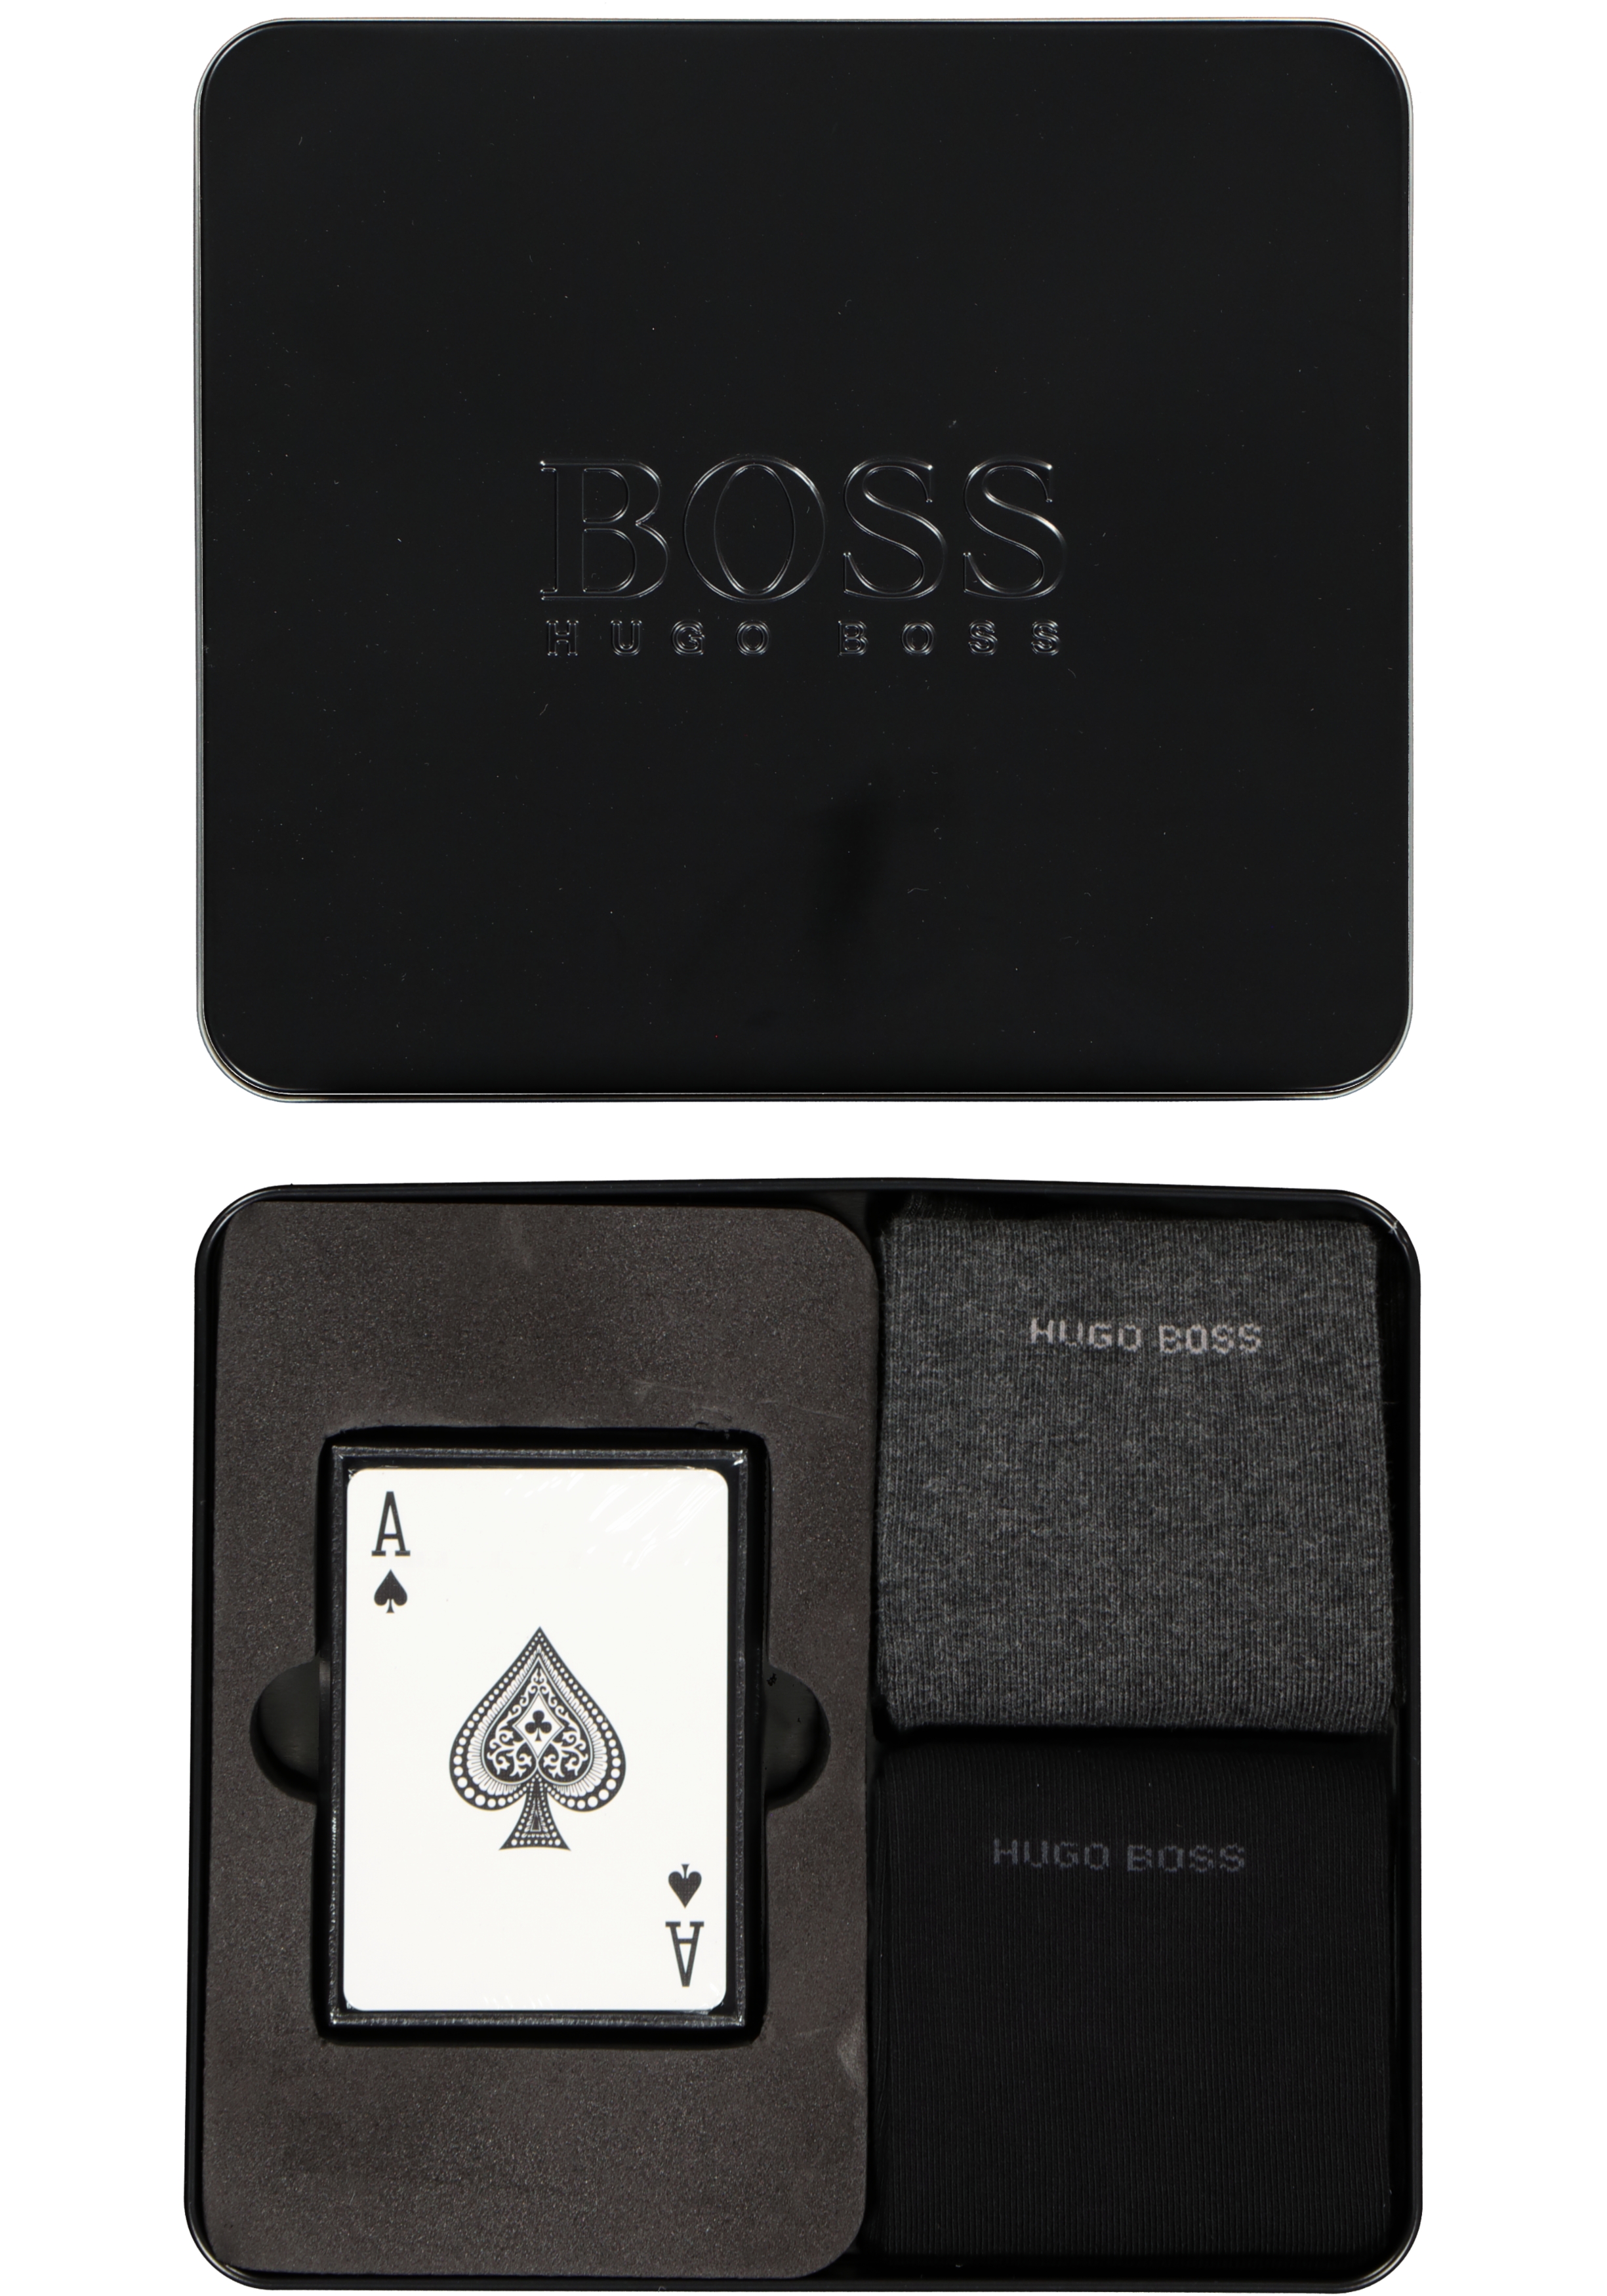 HUGO BOSS cadeauset sokken en kaarten (2-pack), zwart met grijs met speelkaarten